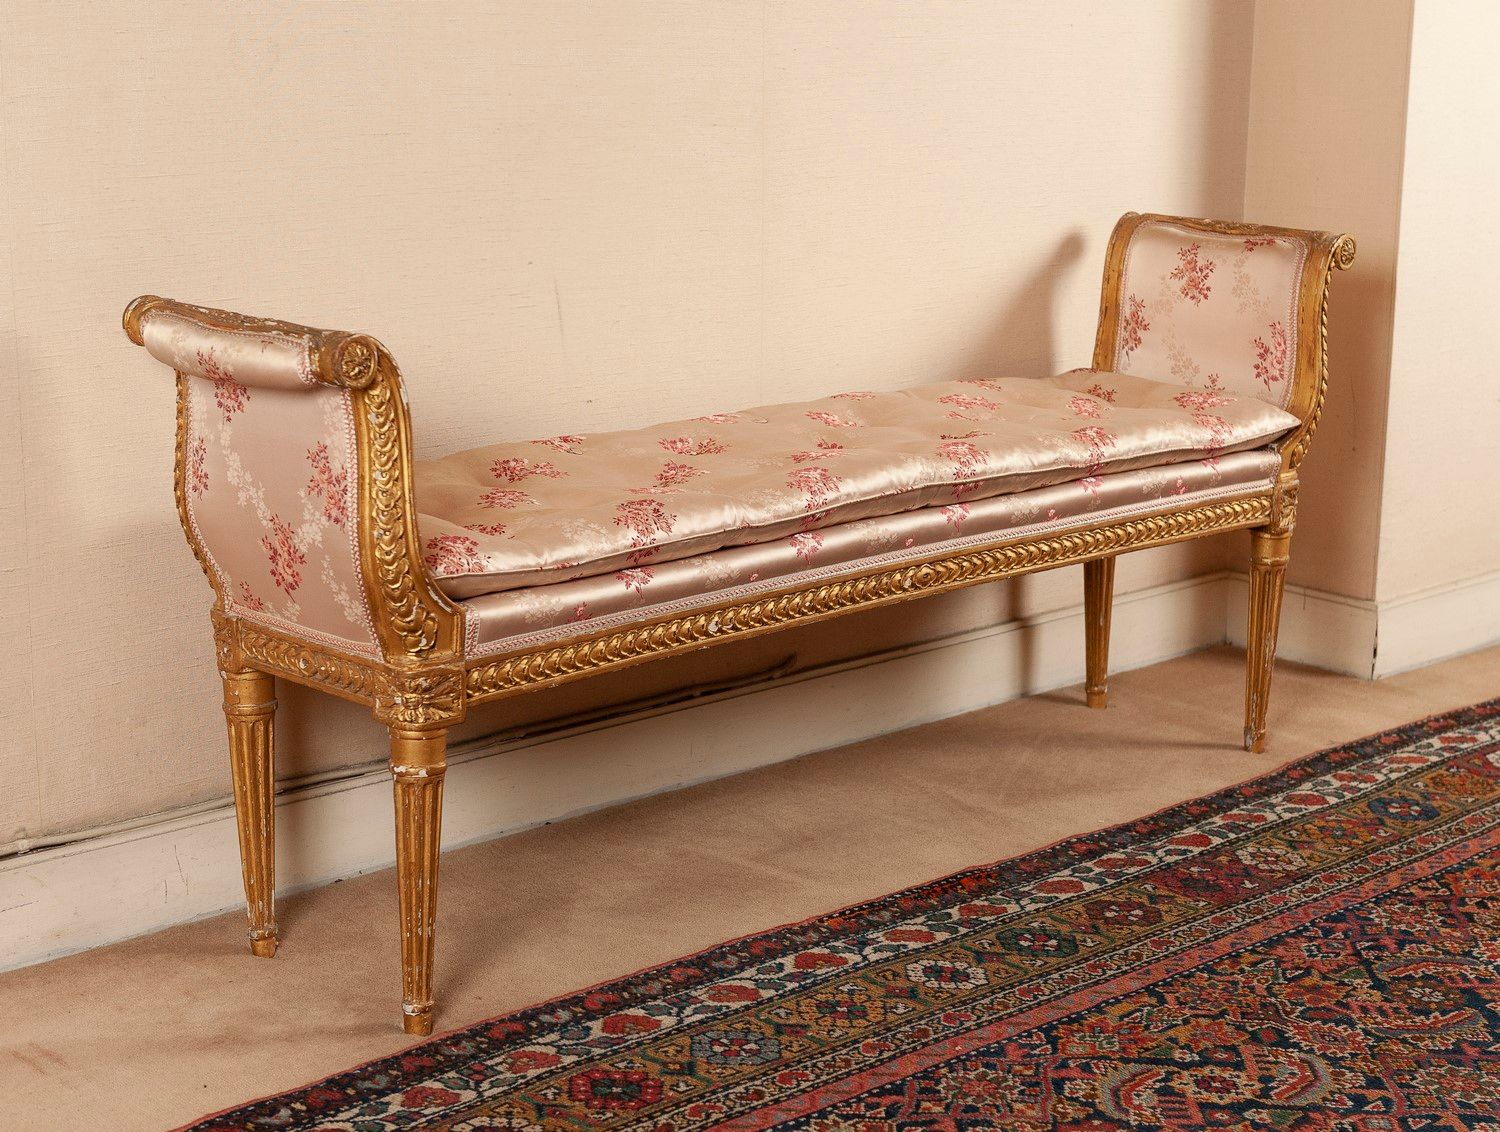 Null Panchina in legno dorato, gambe affusolate con scanalature.

Stile Luigi XV&hellip;